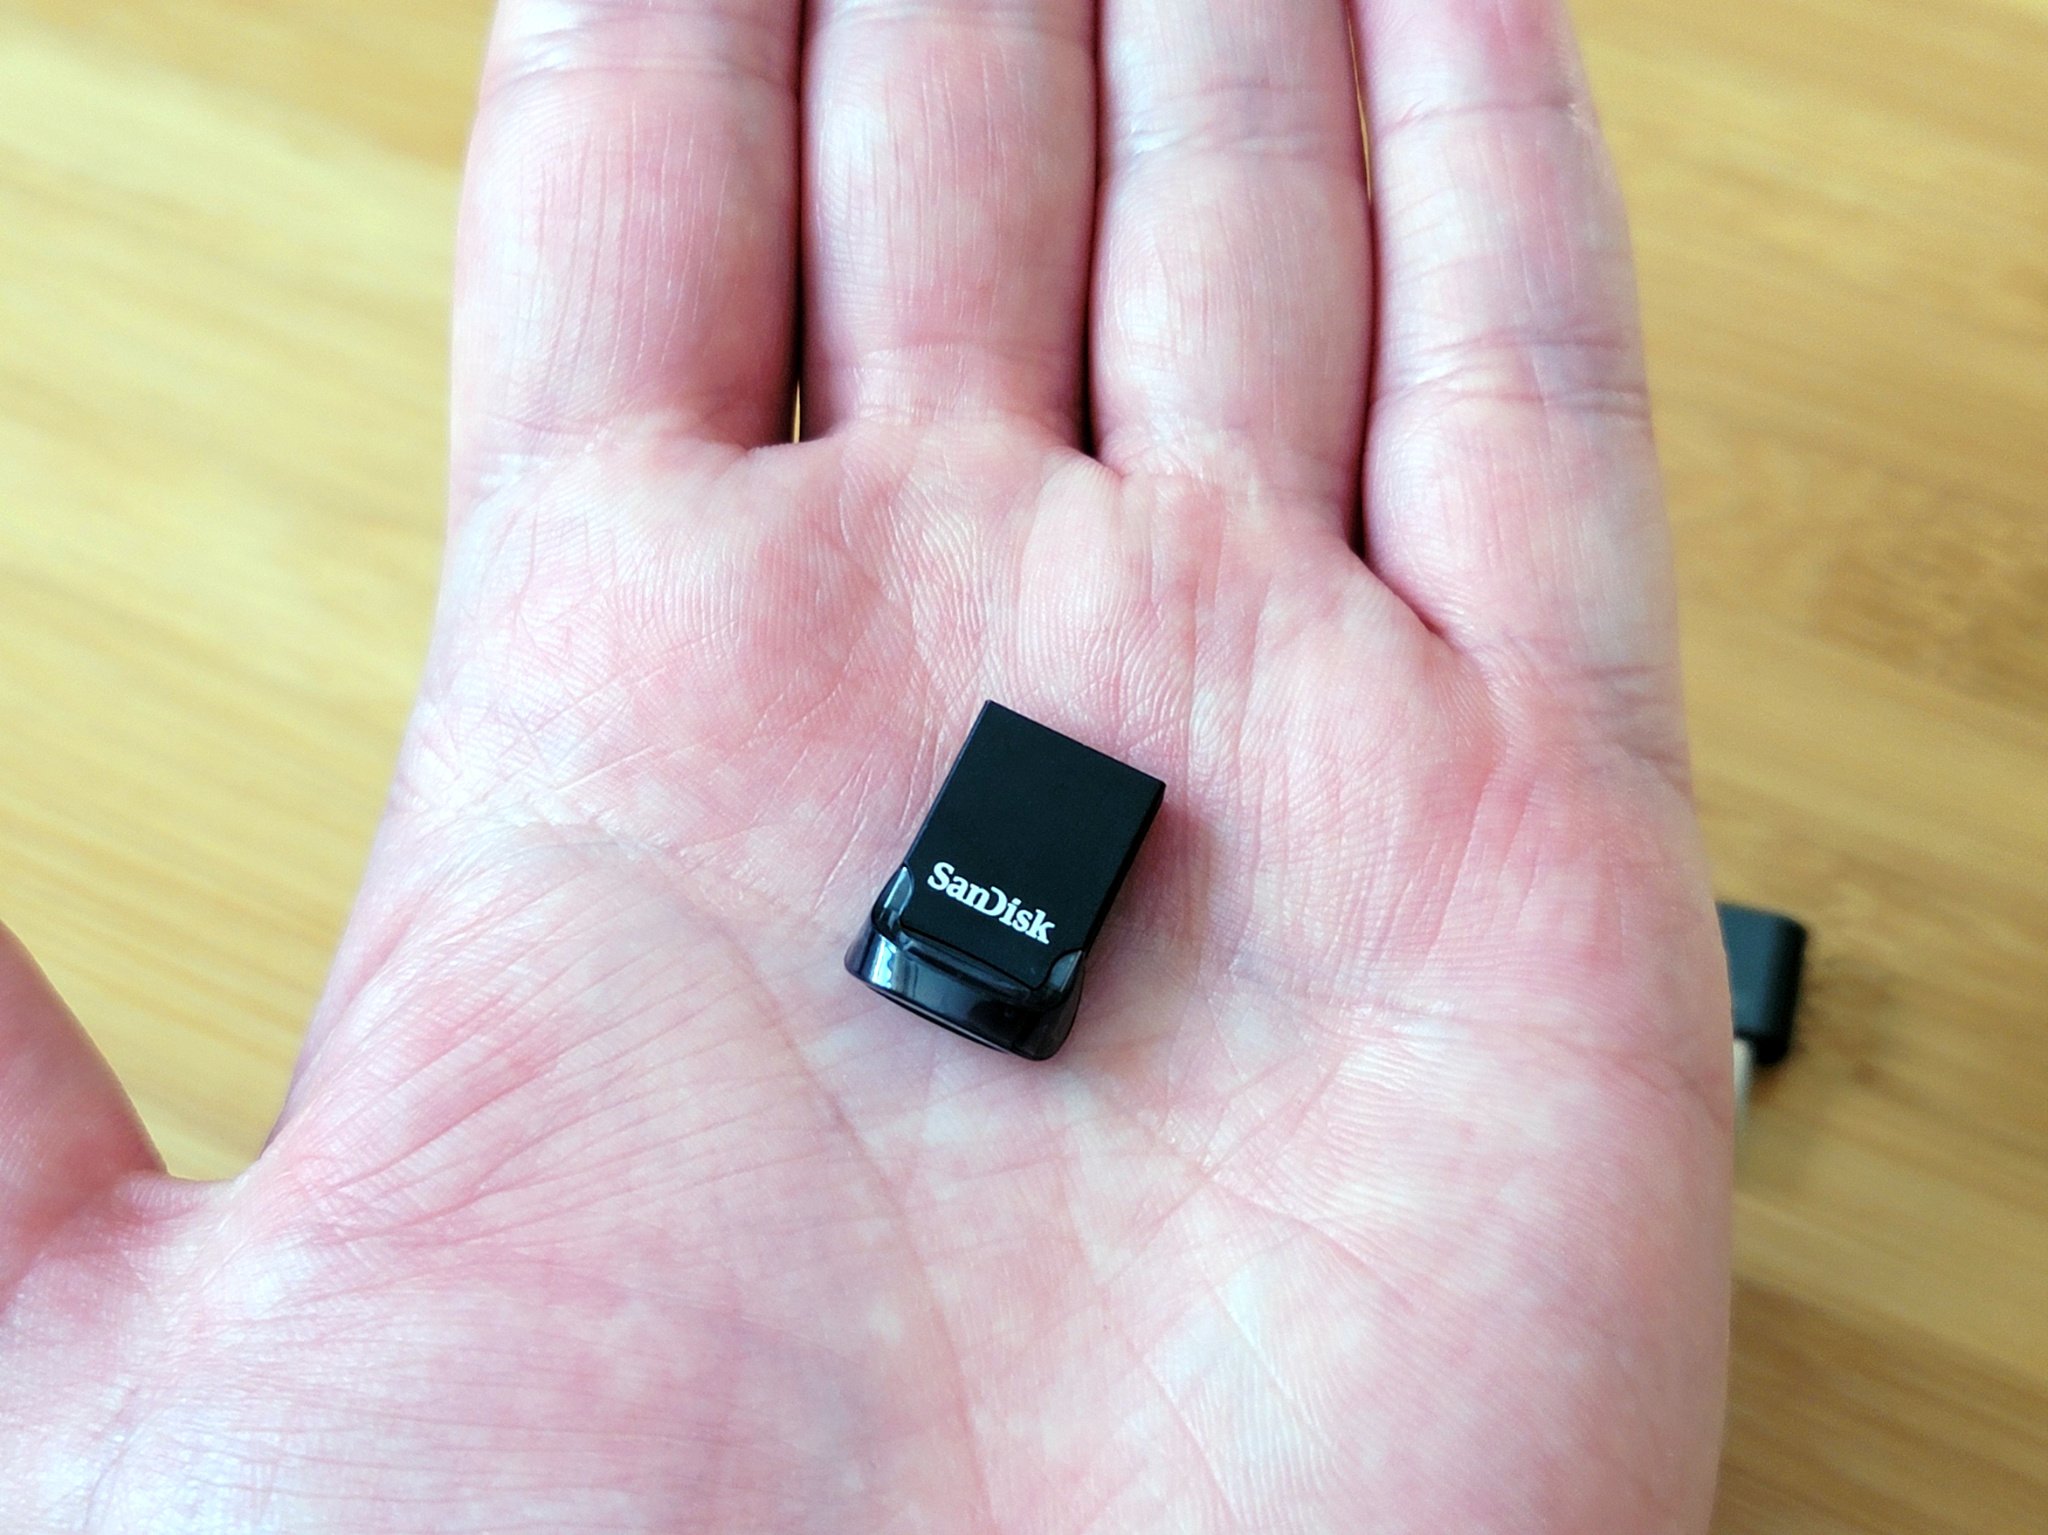   Basics 256GB Ultra Fast USB 3.1 Flash Drive, Black